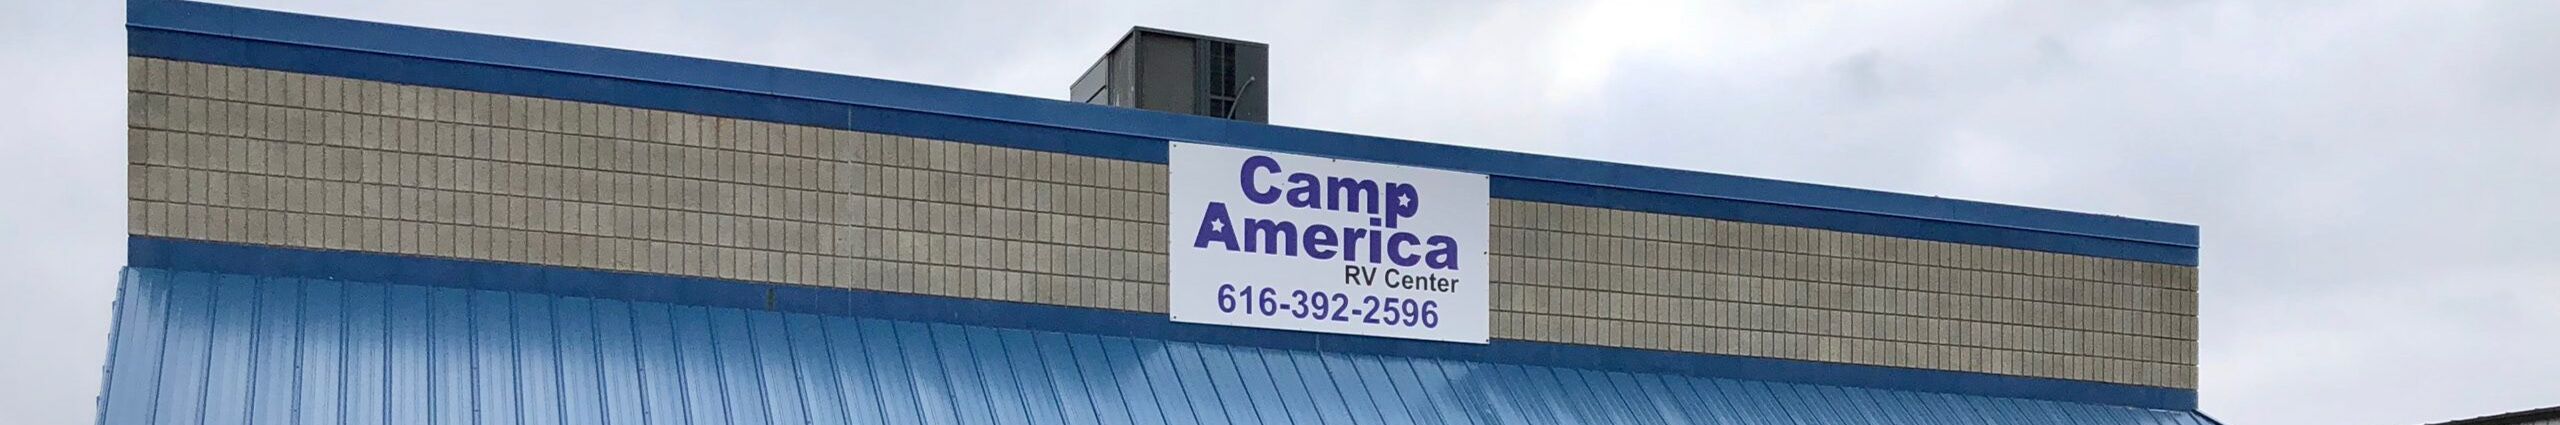 Camp America RV Center's profile banner